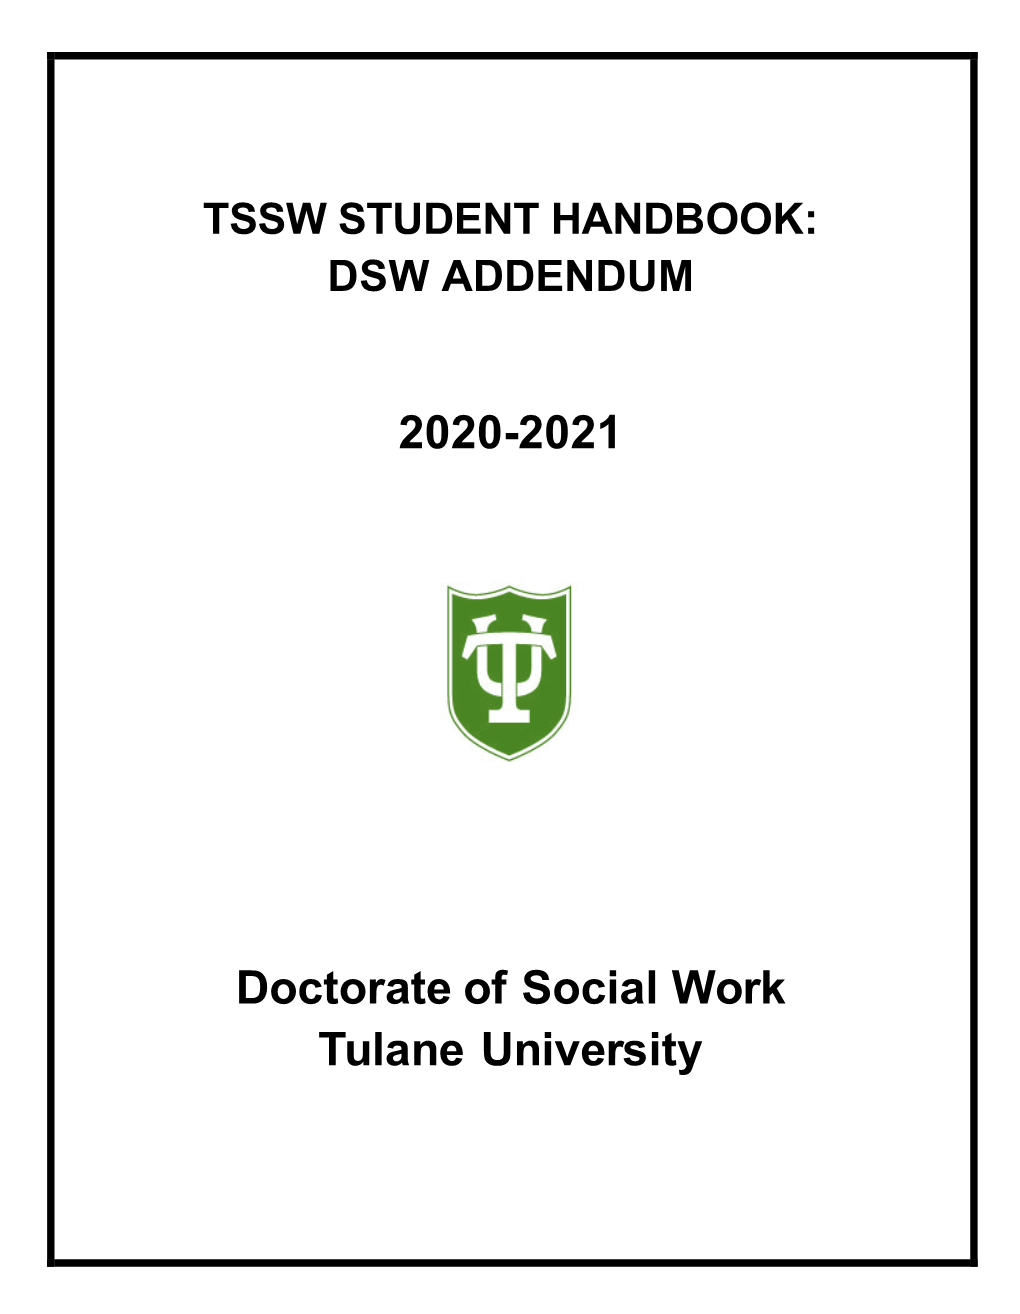 DSW Handbook Addendum (2020-2021)